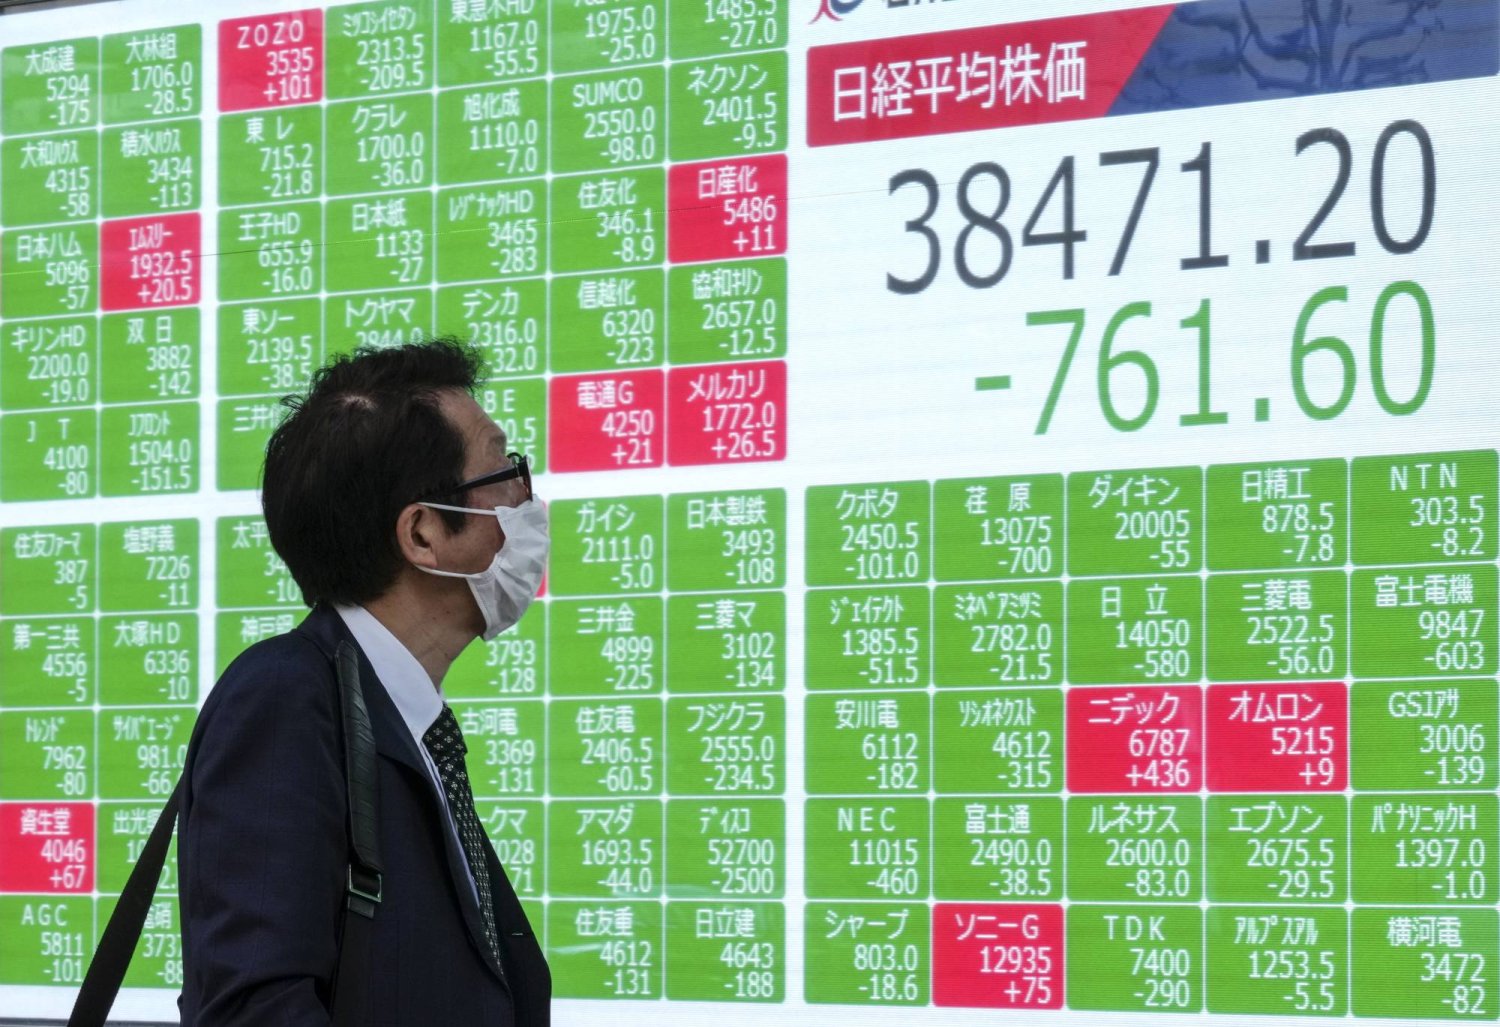 رجل يمر أمام شاشة وسط العاصمة اليابانية طوكيو تعرض تراجع الأسهم على مؤشر «نيكي» يوم الثلاثاء (إ.ب.أ)